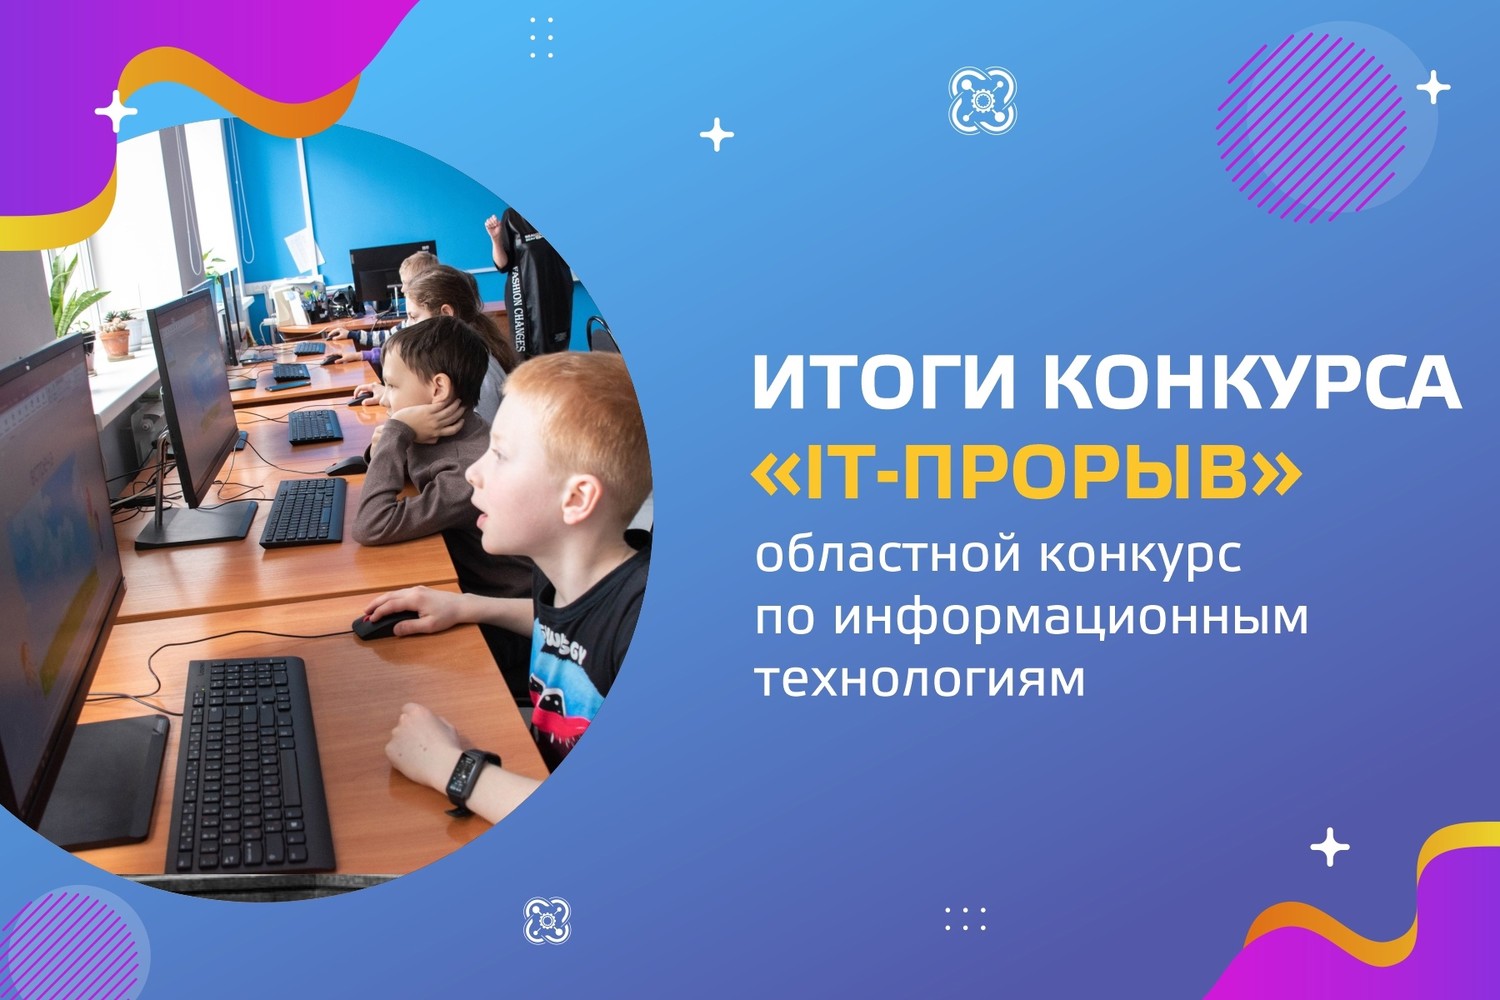 Итоги областного конкурса по информационным технологиям «IT – прорыв»